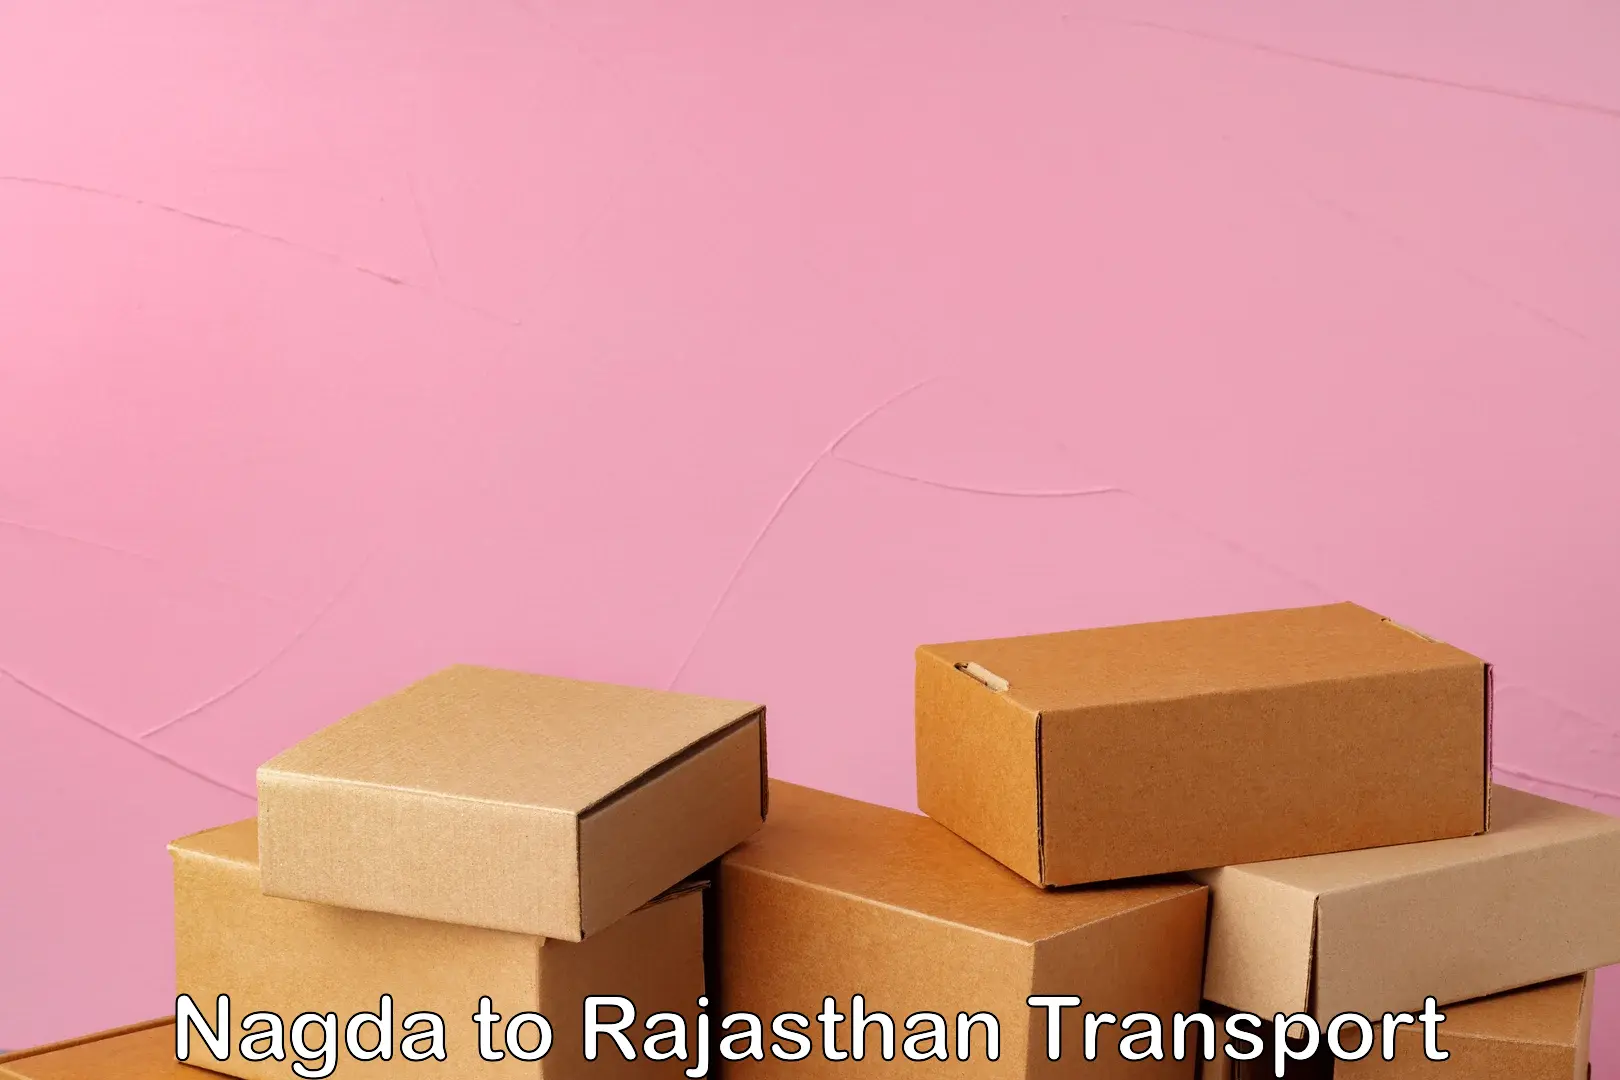 Parcel transport services in Nagda to Sri Vijaynagar